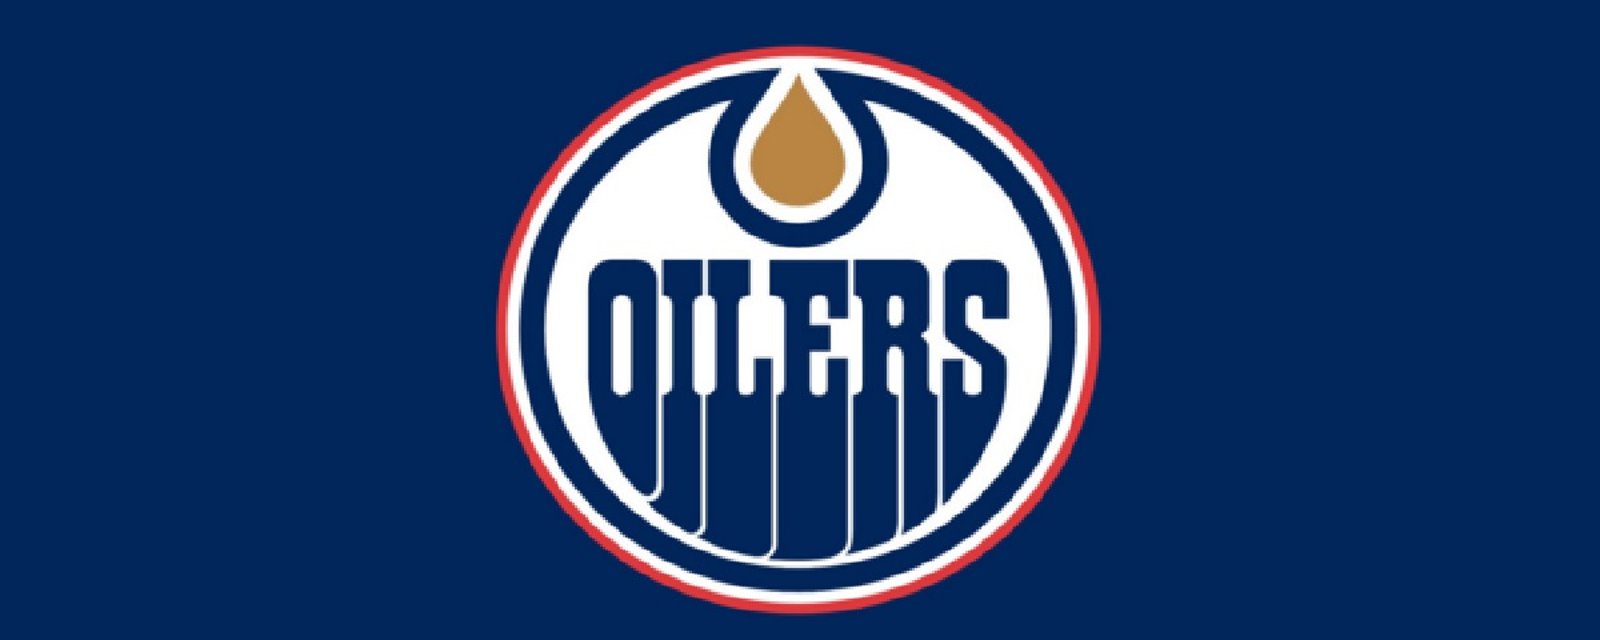 Les Oilers ajoutent un attaquant!